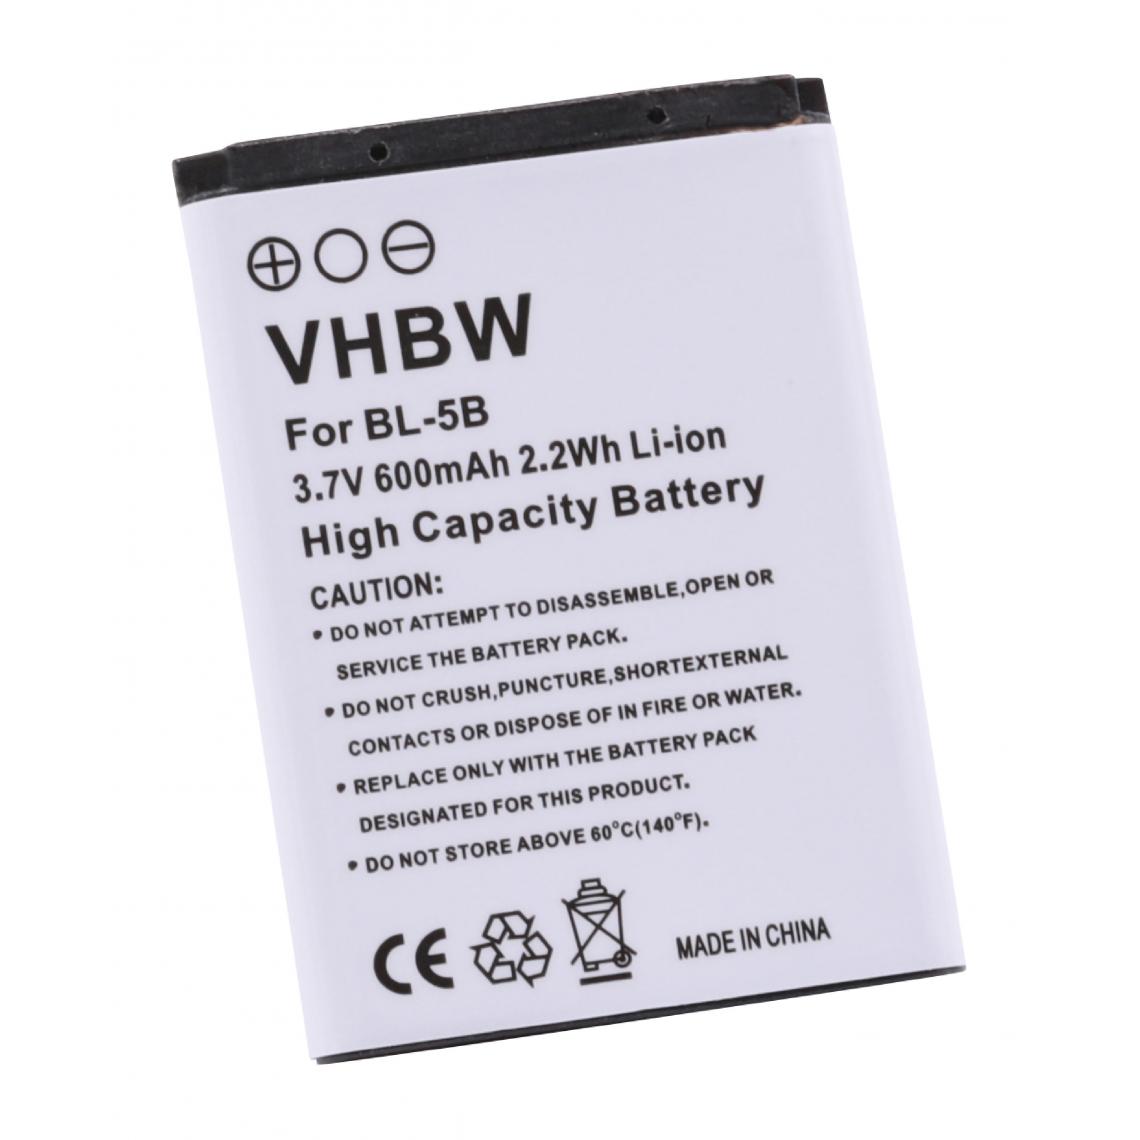 Vhbw - vhbw Batterie compatible avec NGM Soap smartphone (600mAh, 3,7V, Li-ion) - Batterie téléphone